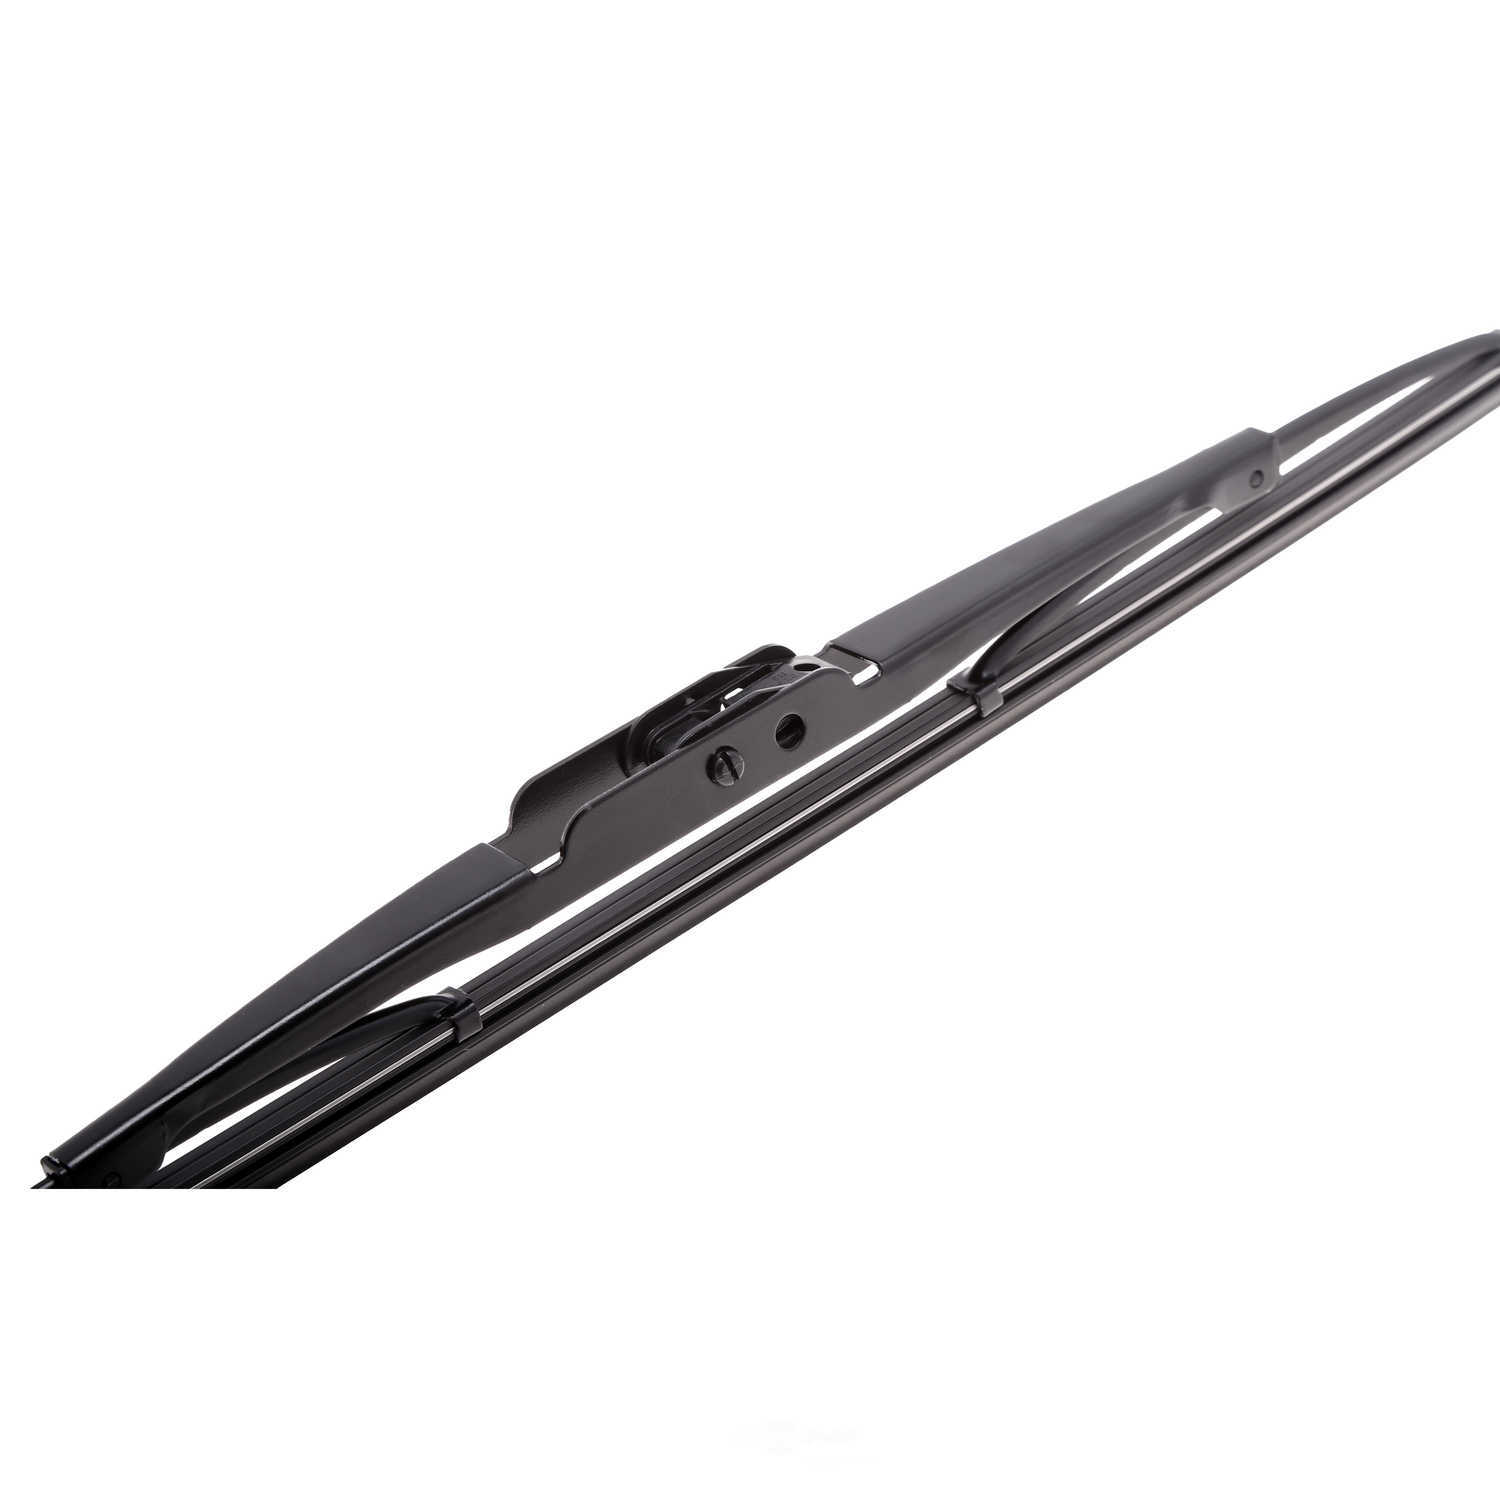 ANCO WIPER PRODUCTS - ANCO 97-Series Wiper Blade - ANC 97-13